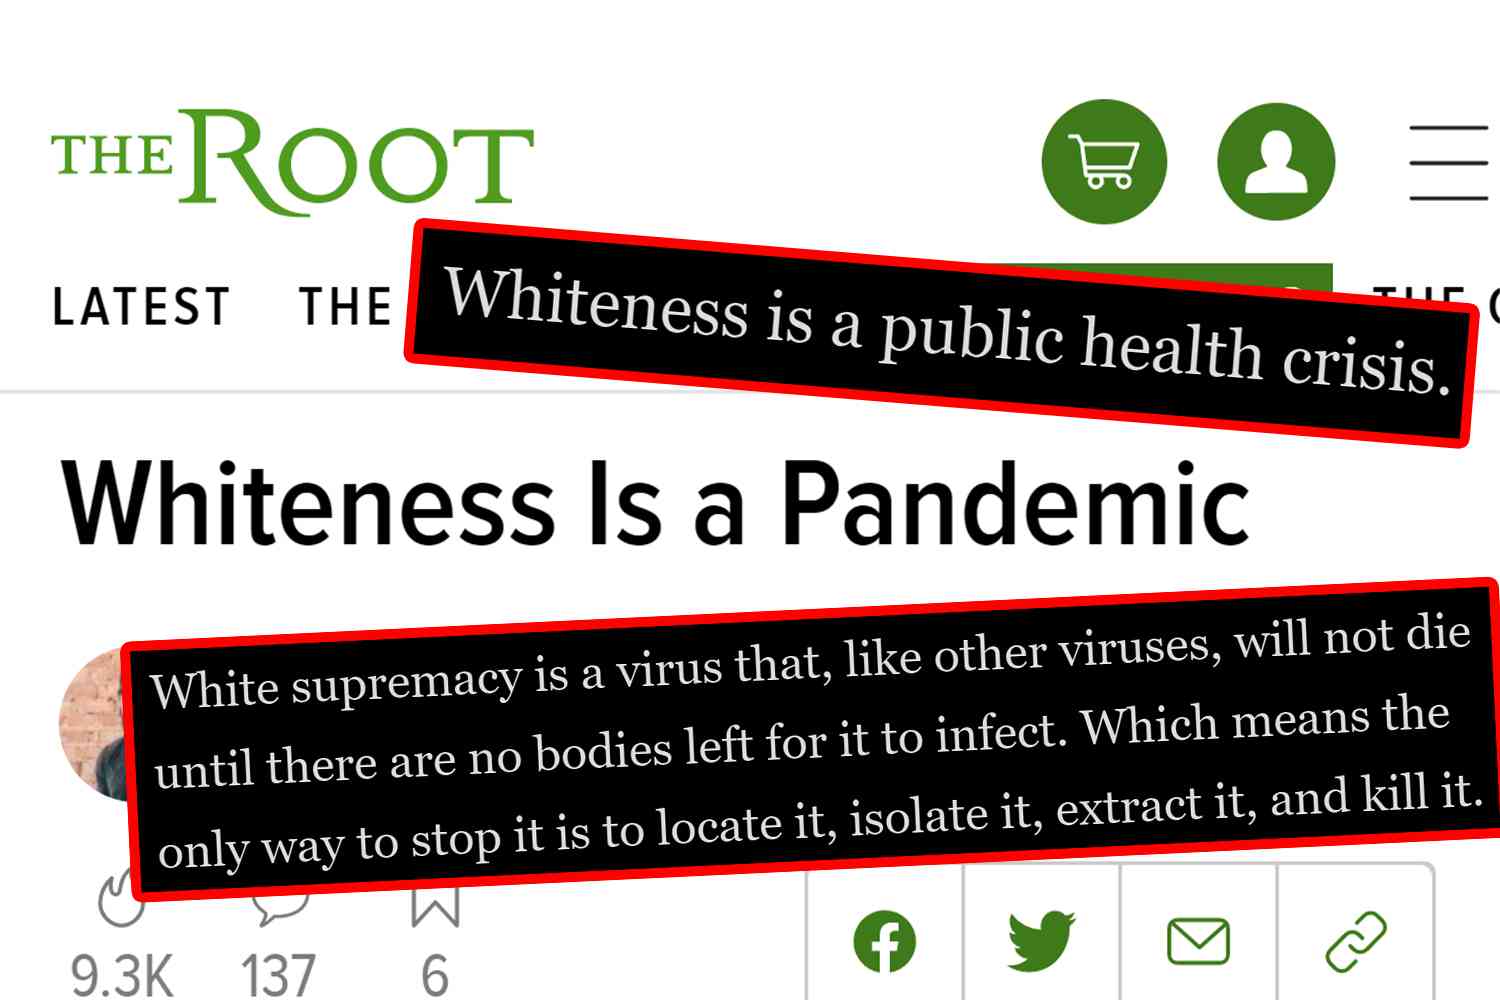 The Root: “La razza bianca e’ una pandemia” – L’unico modo di fermarla e’ isolarla e ucciderla